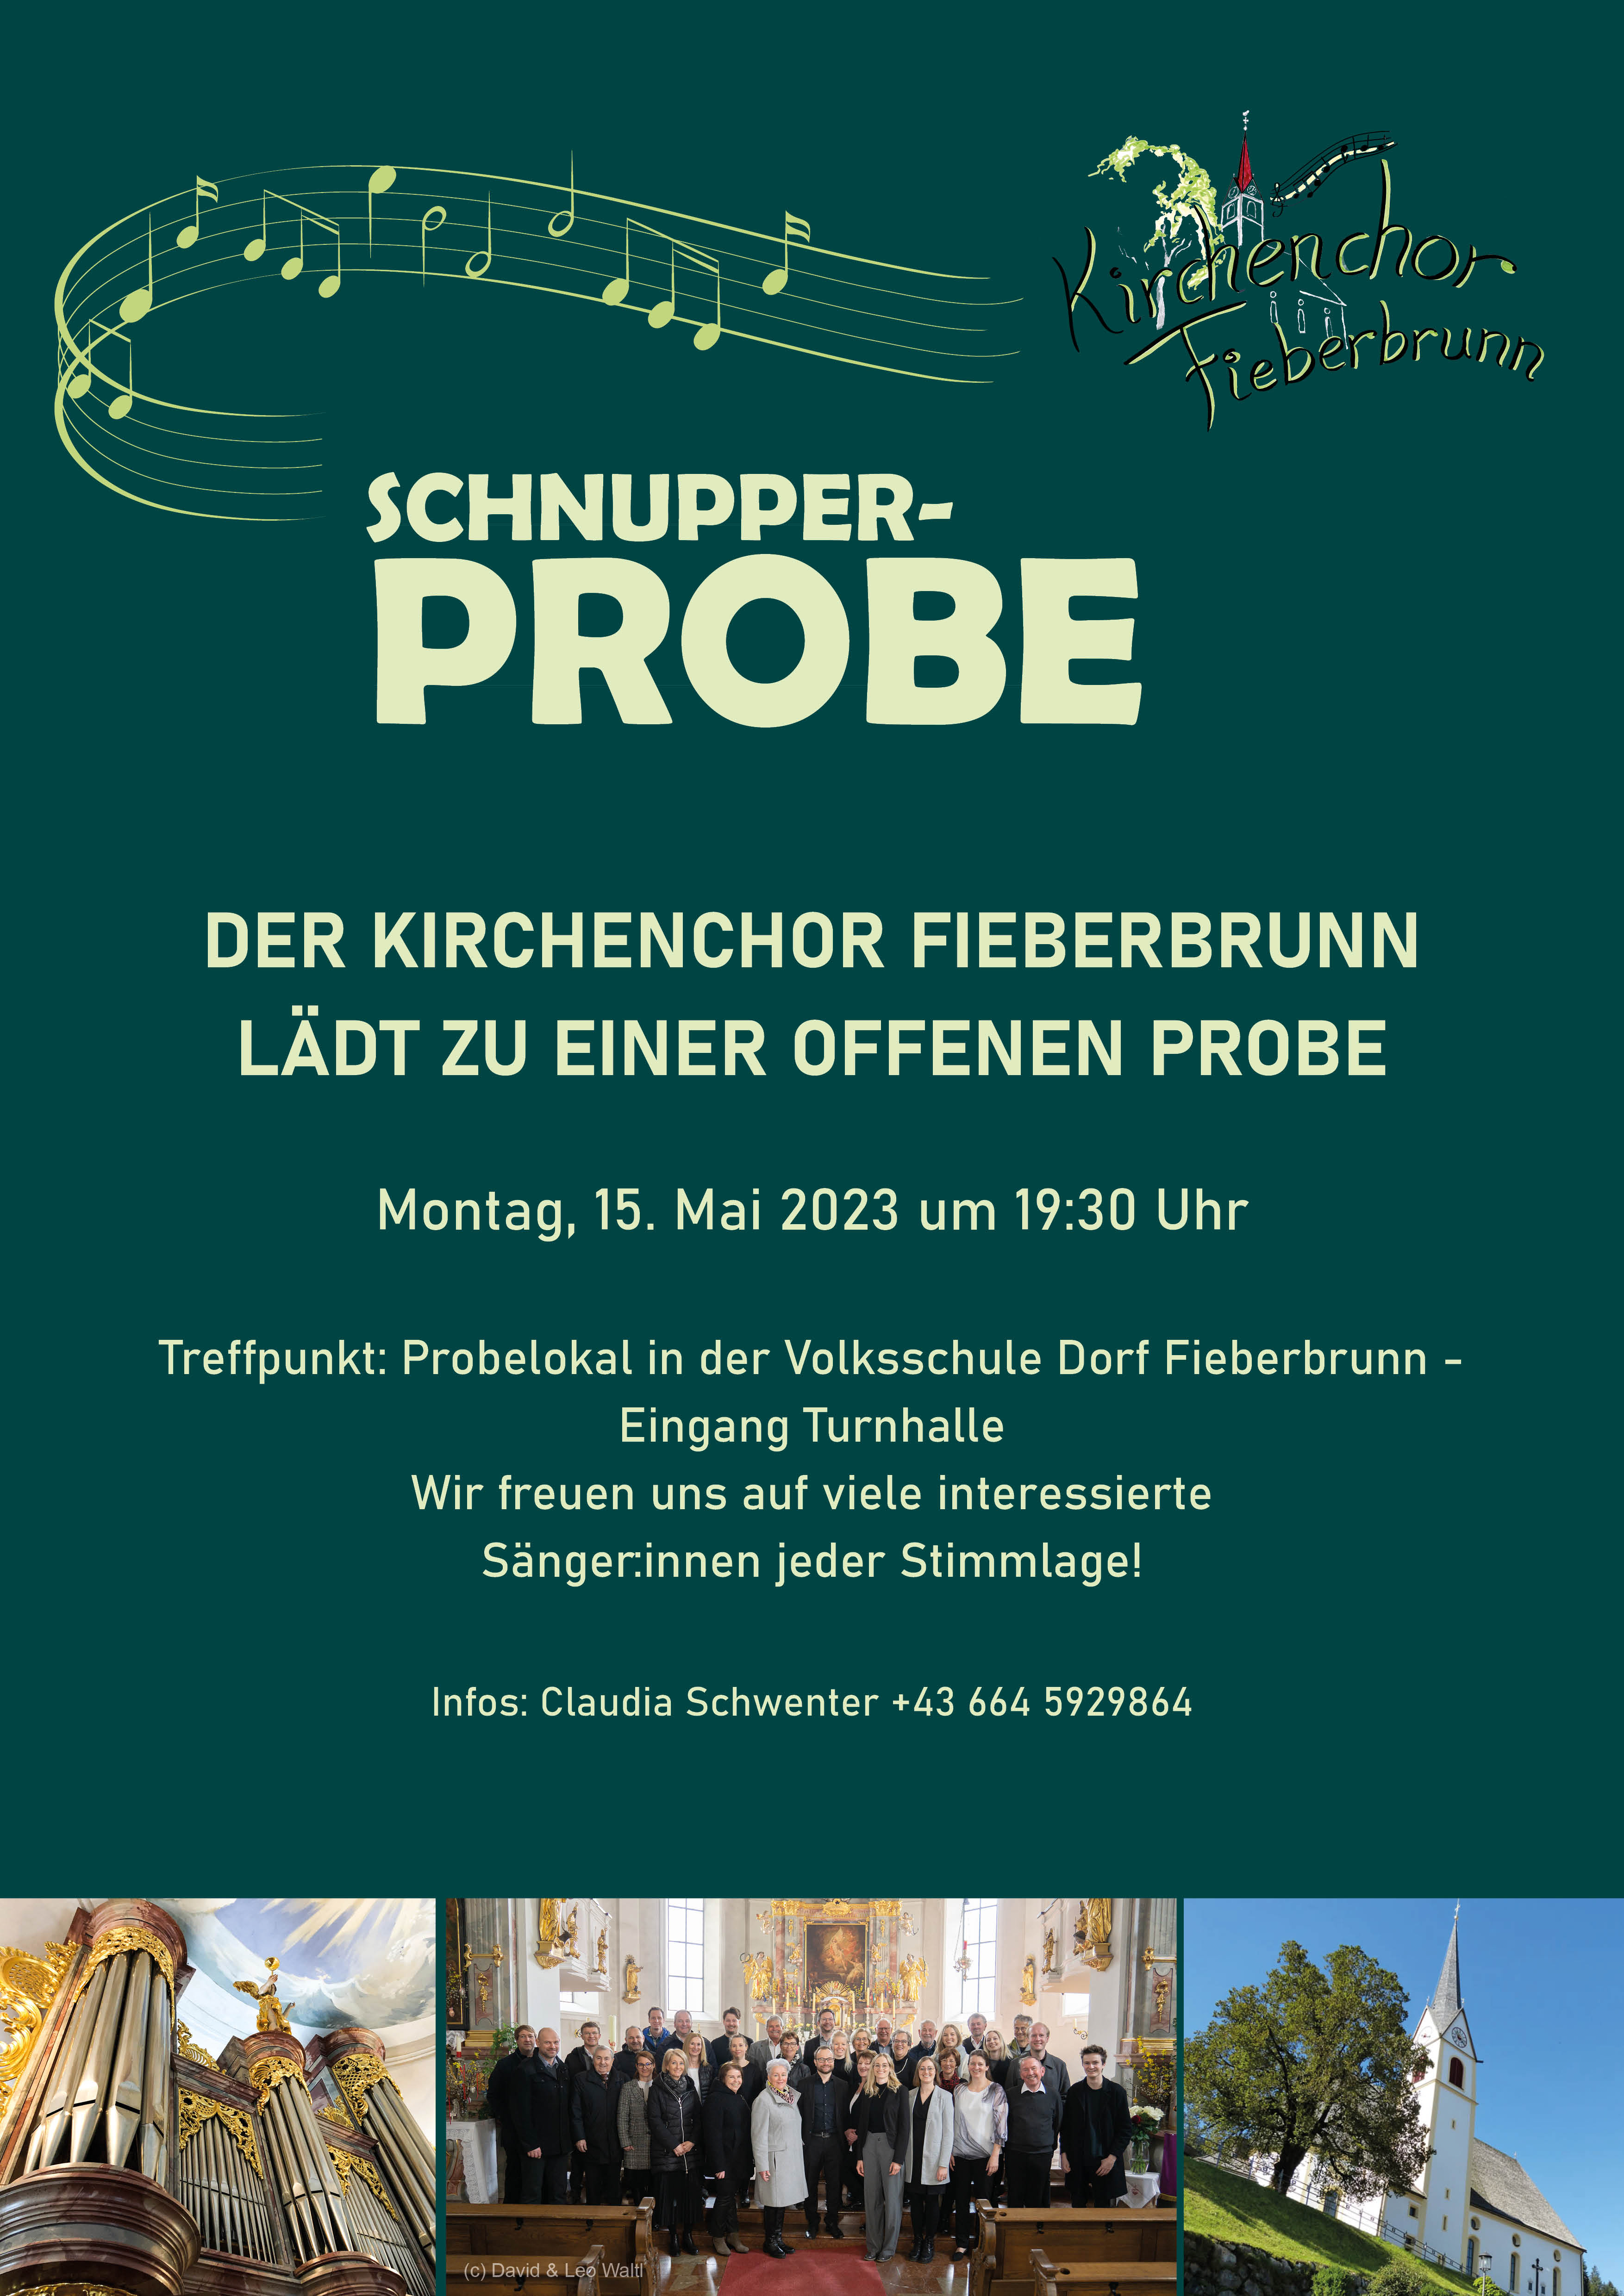 Schnupperprobe Kirchenchor Fieberbrunn